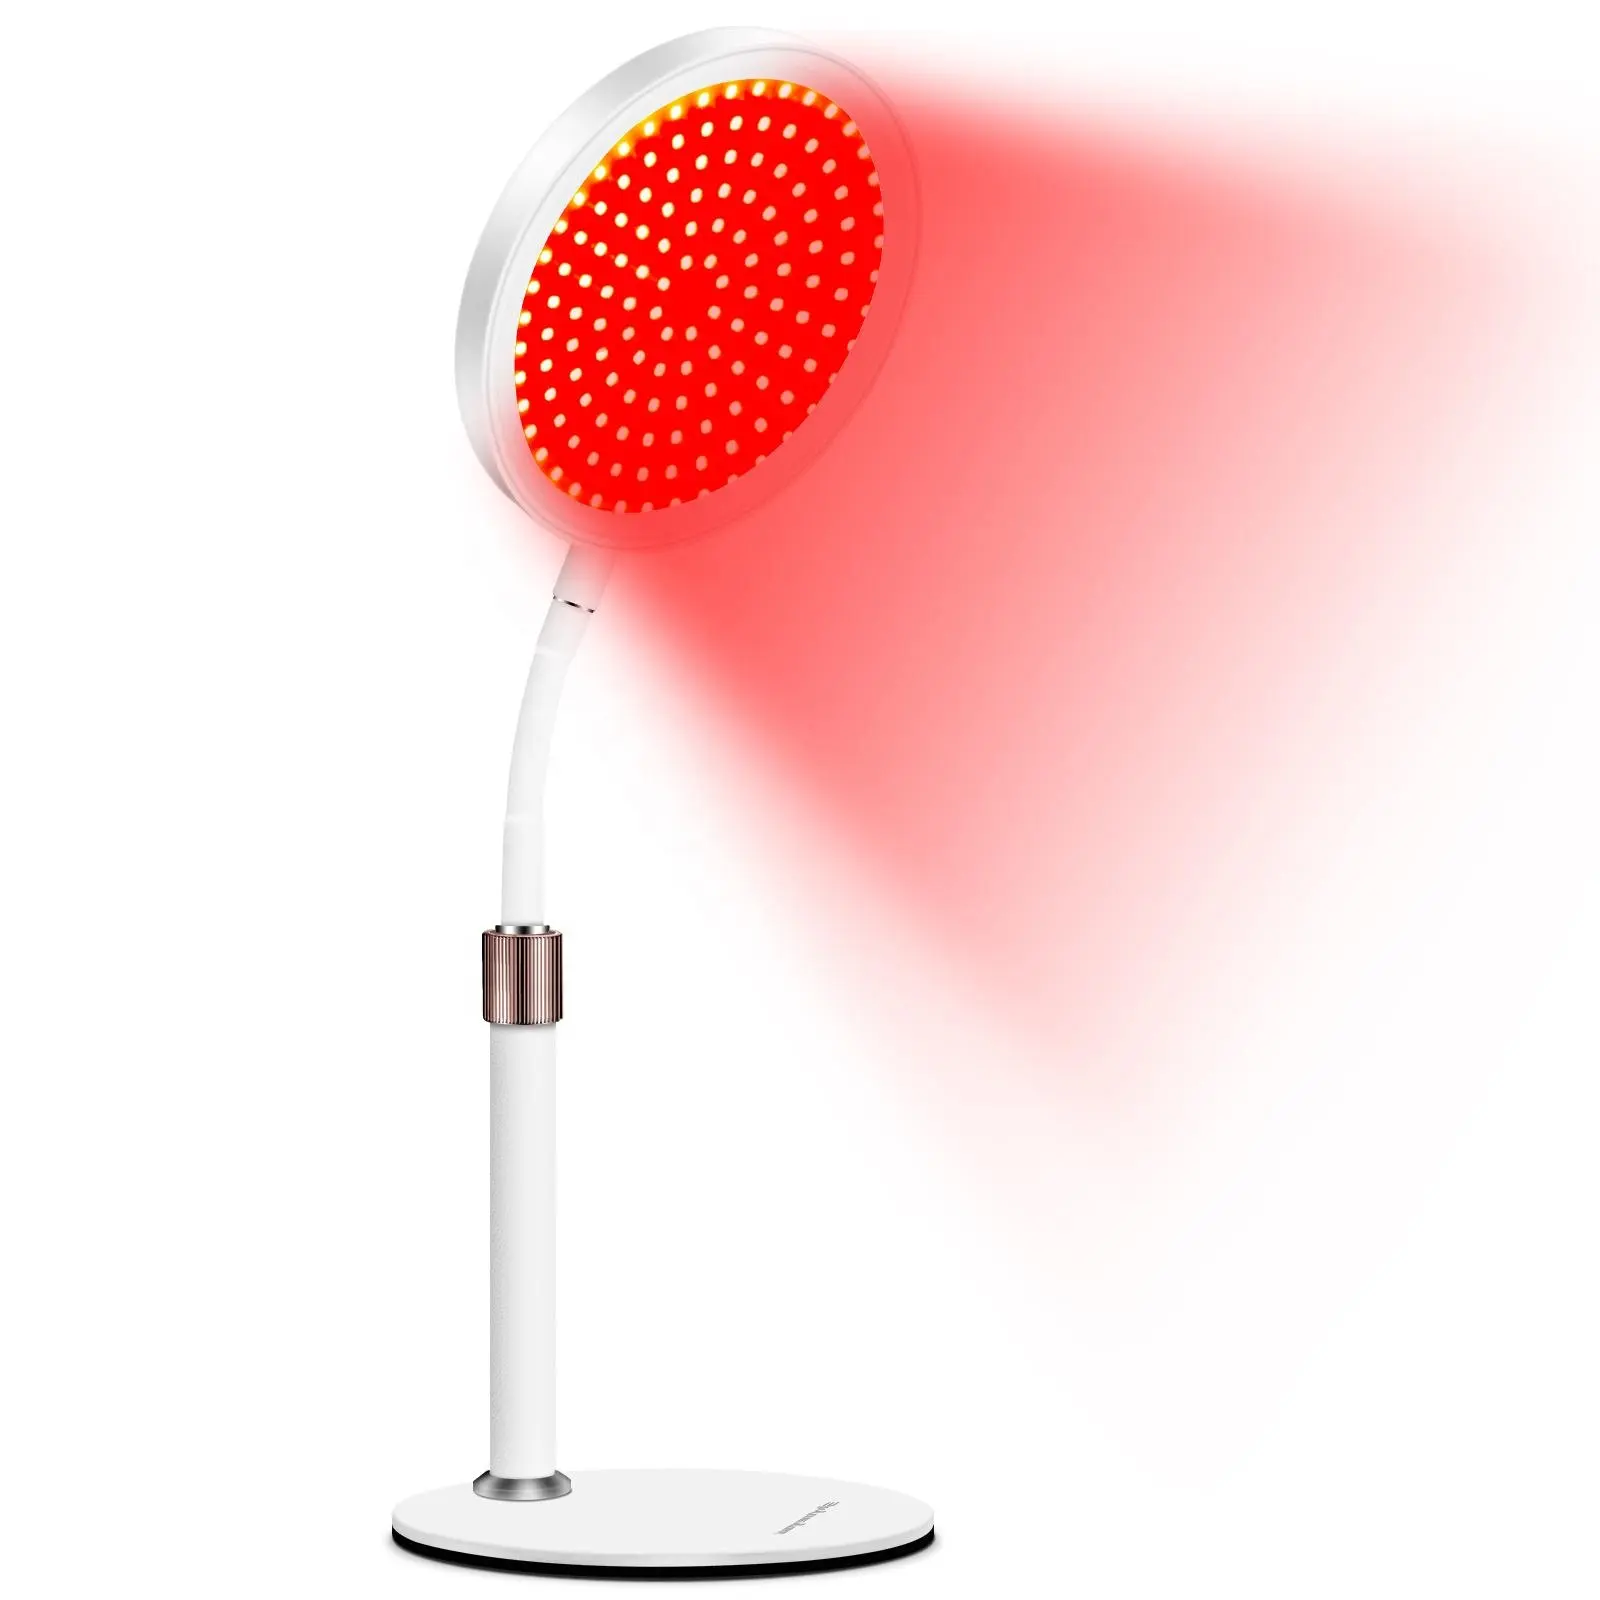 Yüz vücut, cilt bakımı, ev LED terapi lambası 140LEDs için zamanlama ve ayarlanabilir Stand ile kırmızı ışık tedavisi